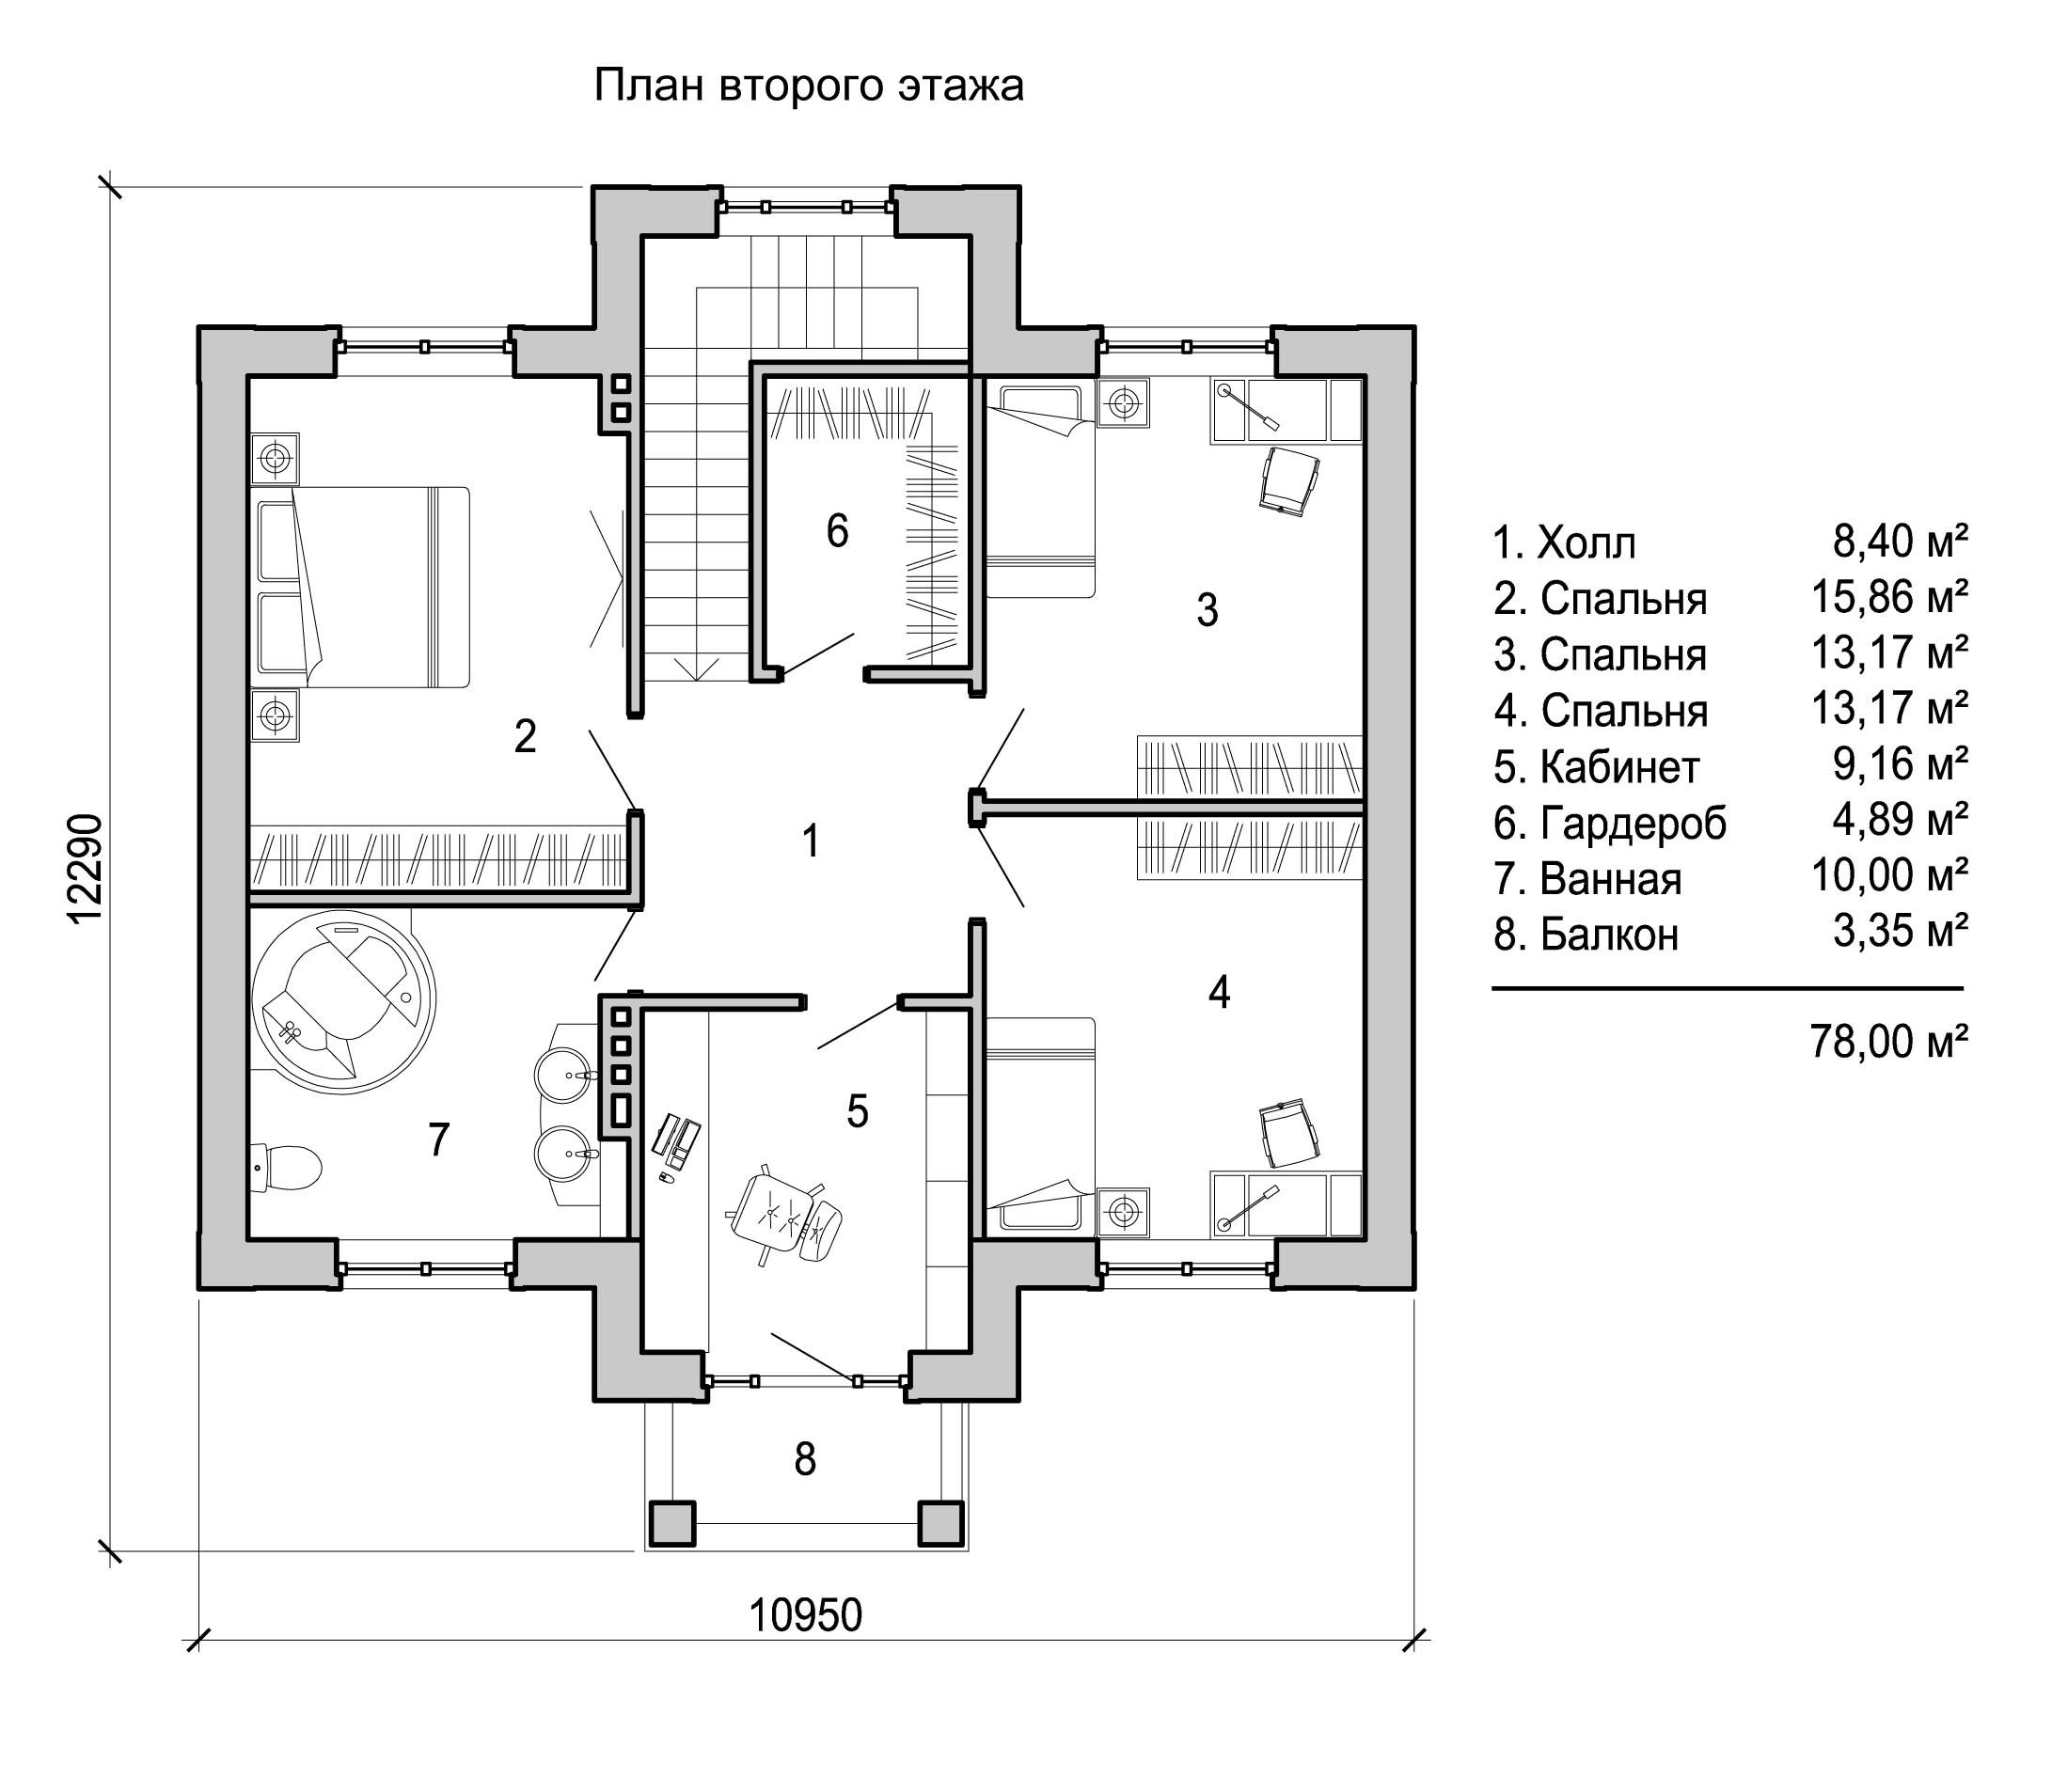 Планировка двухэтажного дома с двумя санузлами